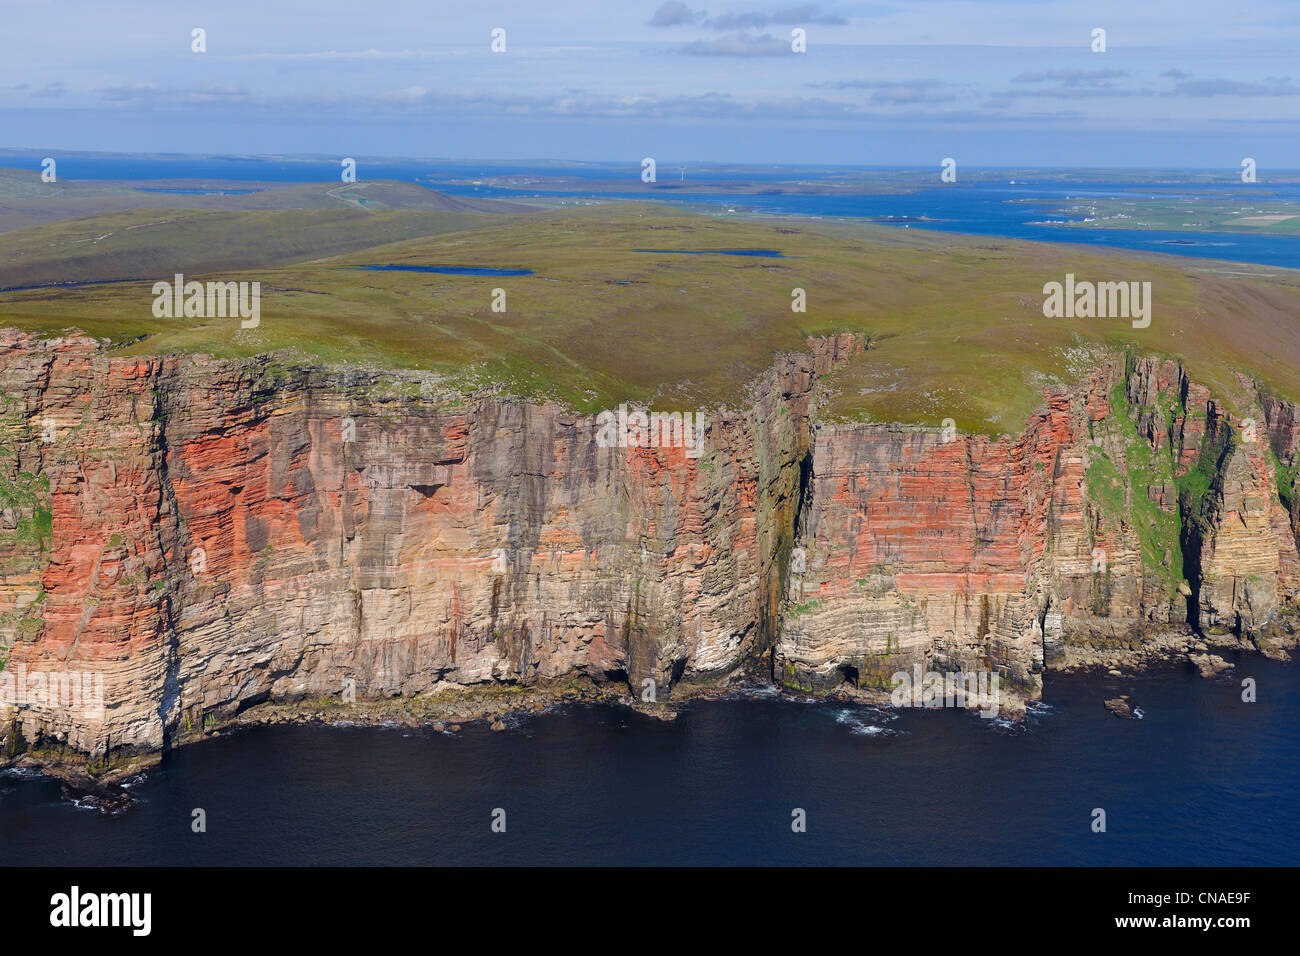 Royaume-uni, Ecosse, îles Orcades, falaises de l'île de Hoy sur la côte Atlantique au sud de Scapa Flow et Rackwick Banque D'Images